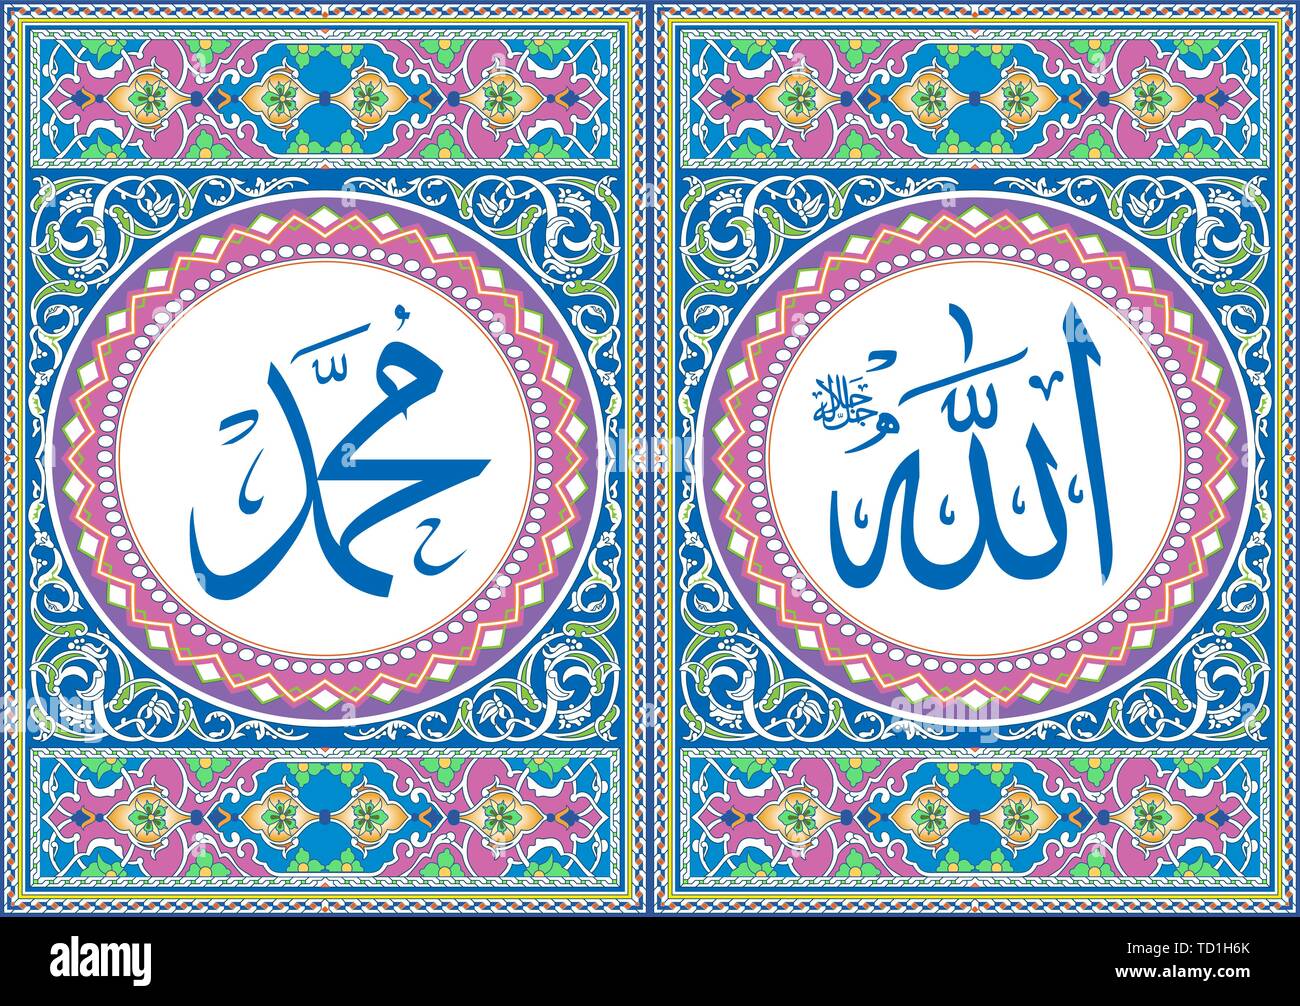 Allah nel testo arabo (Dio) nella giusta posizione & Muhammad nel testo arabo (Il profeta) a sinistra posizione immagine, arte Pop Colore parete, stampe d'arte Illustrazione Vettoriale